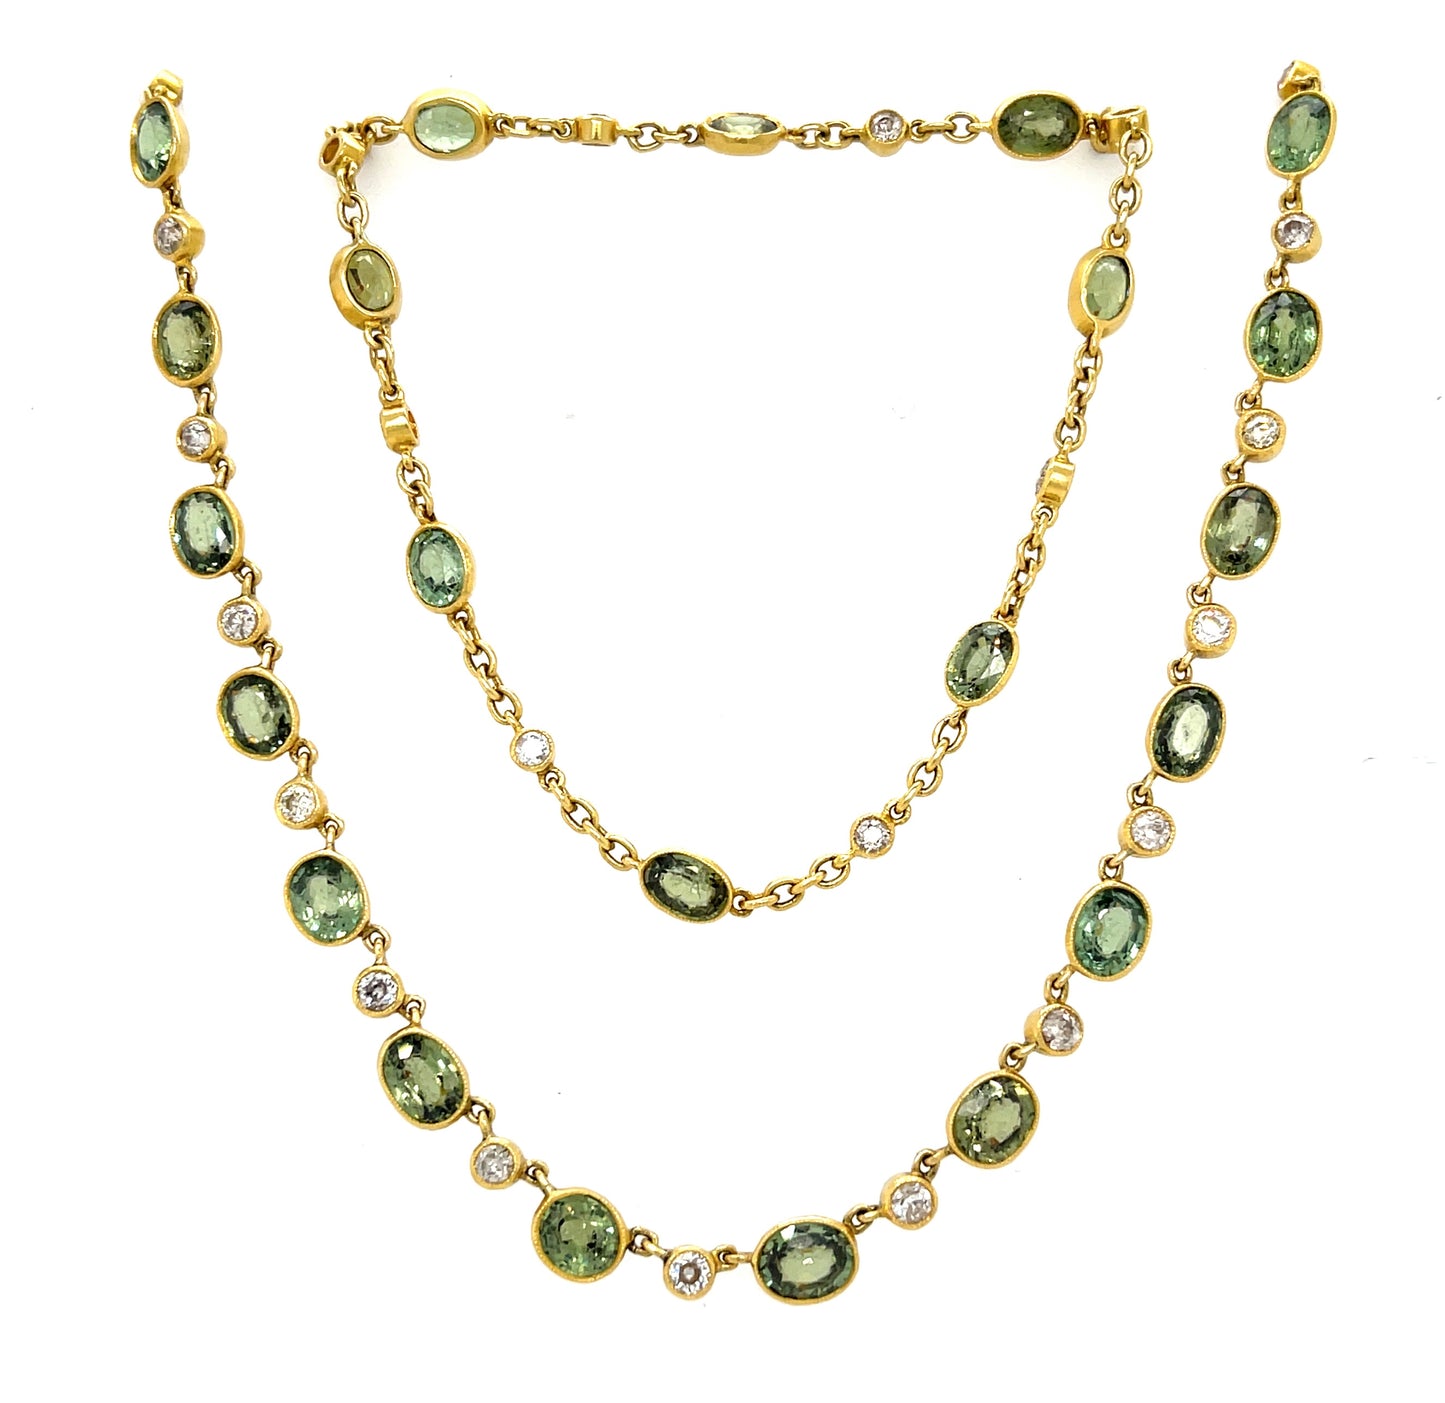 31ct Demantoid Garnet Necklace 18KY (Vintage Circa 1960s) 4.20ct Diamonds